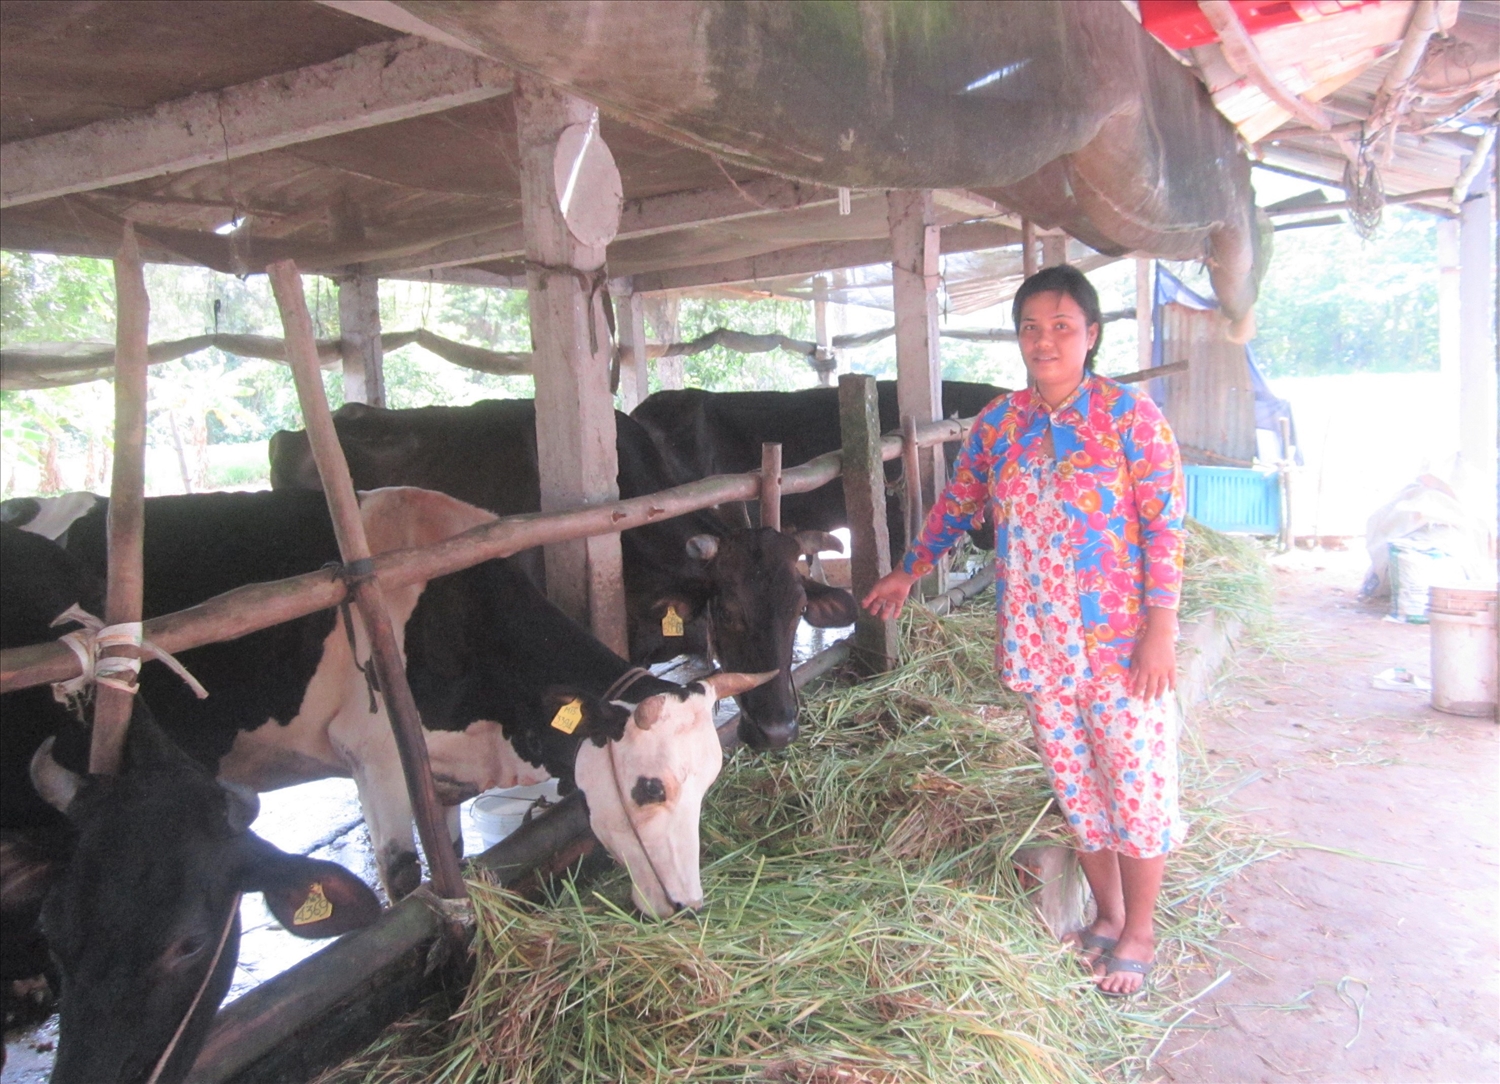 Chị Quách Yến Thu, ở ấp Trung Hòa, xã Tuân Tức được hỗ trợ vay vốn ngân hàng để đầu tư nuôi bò, giúp gia đình có thu nhập ổn định, cải thiện đời sống.